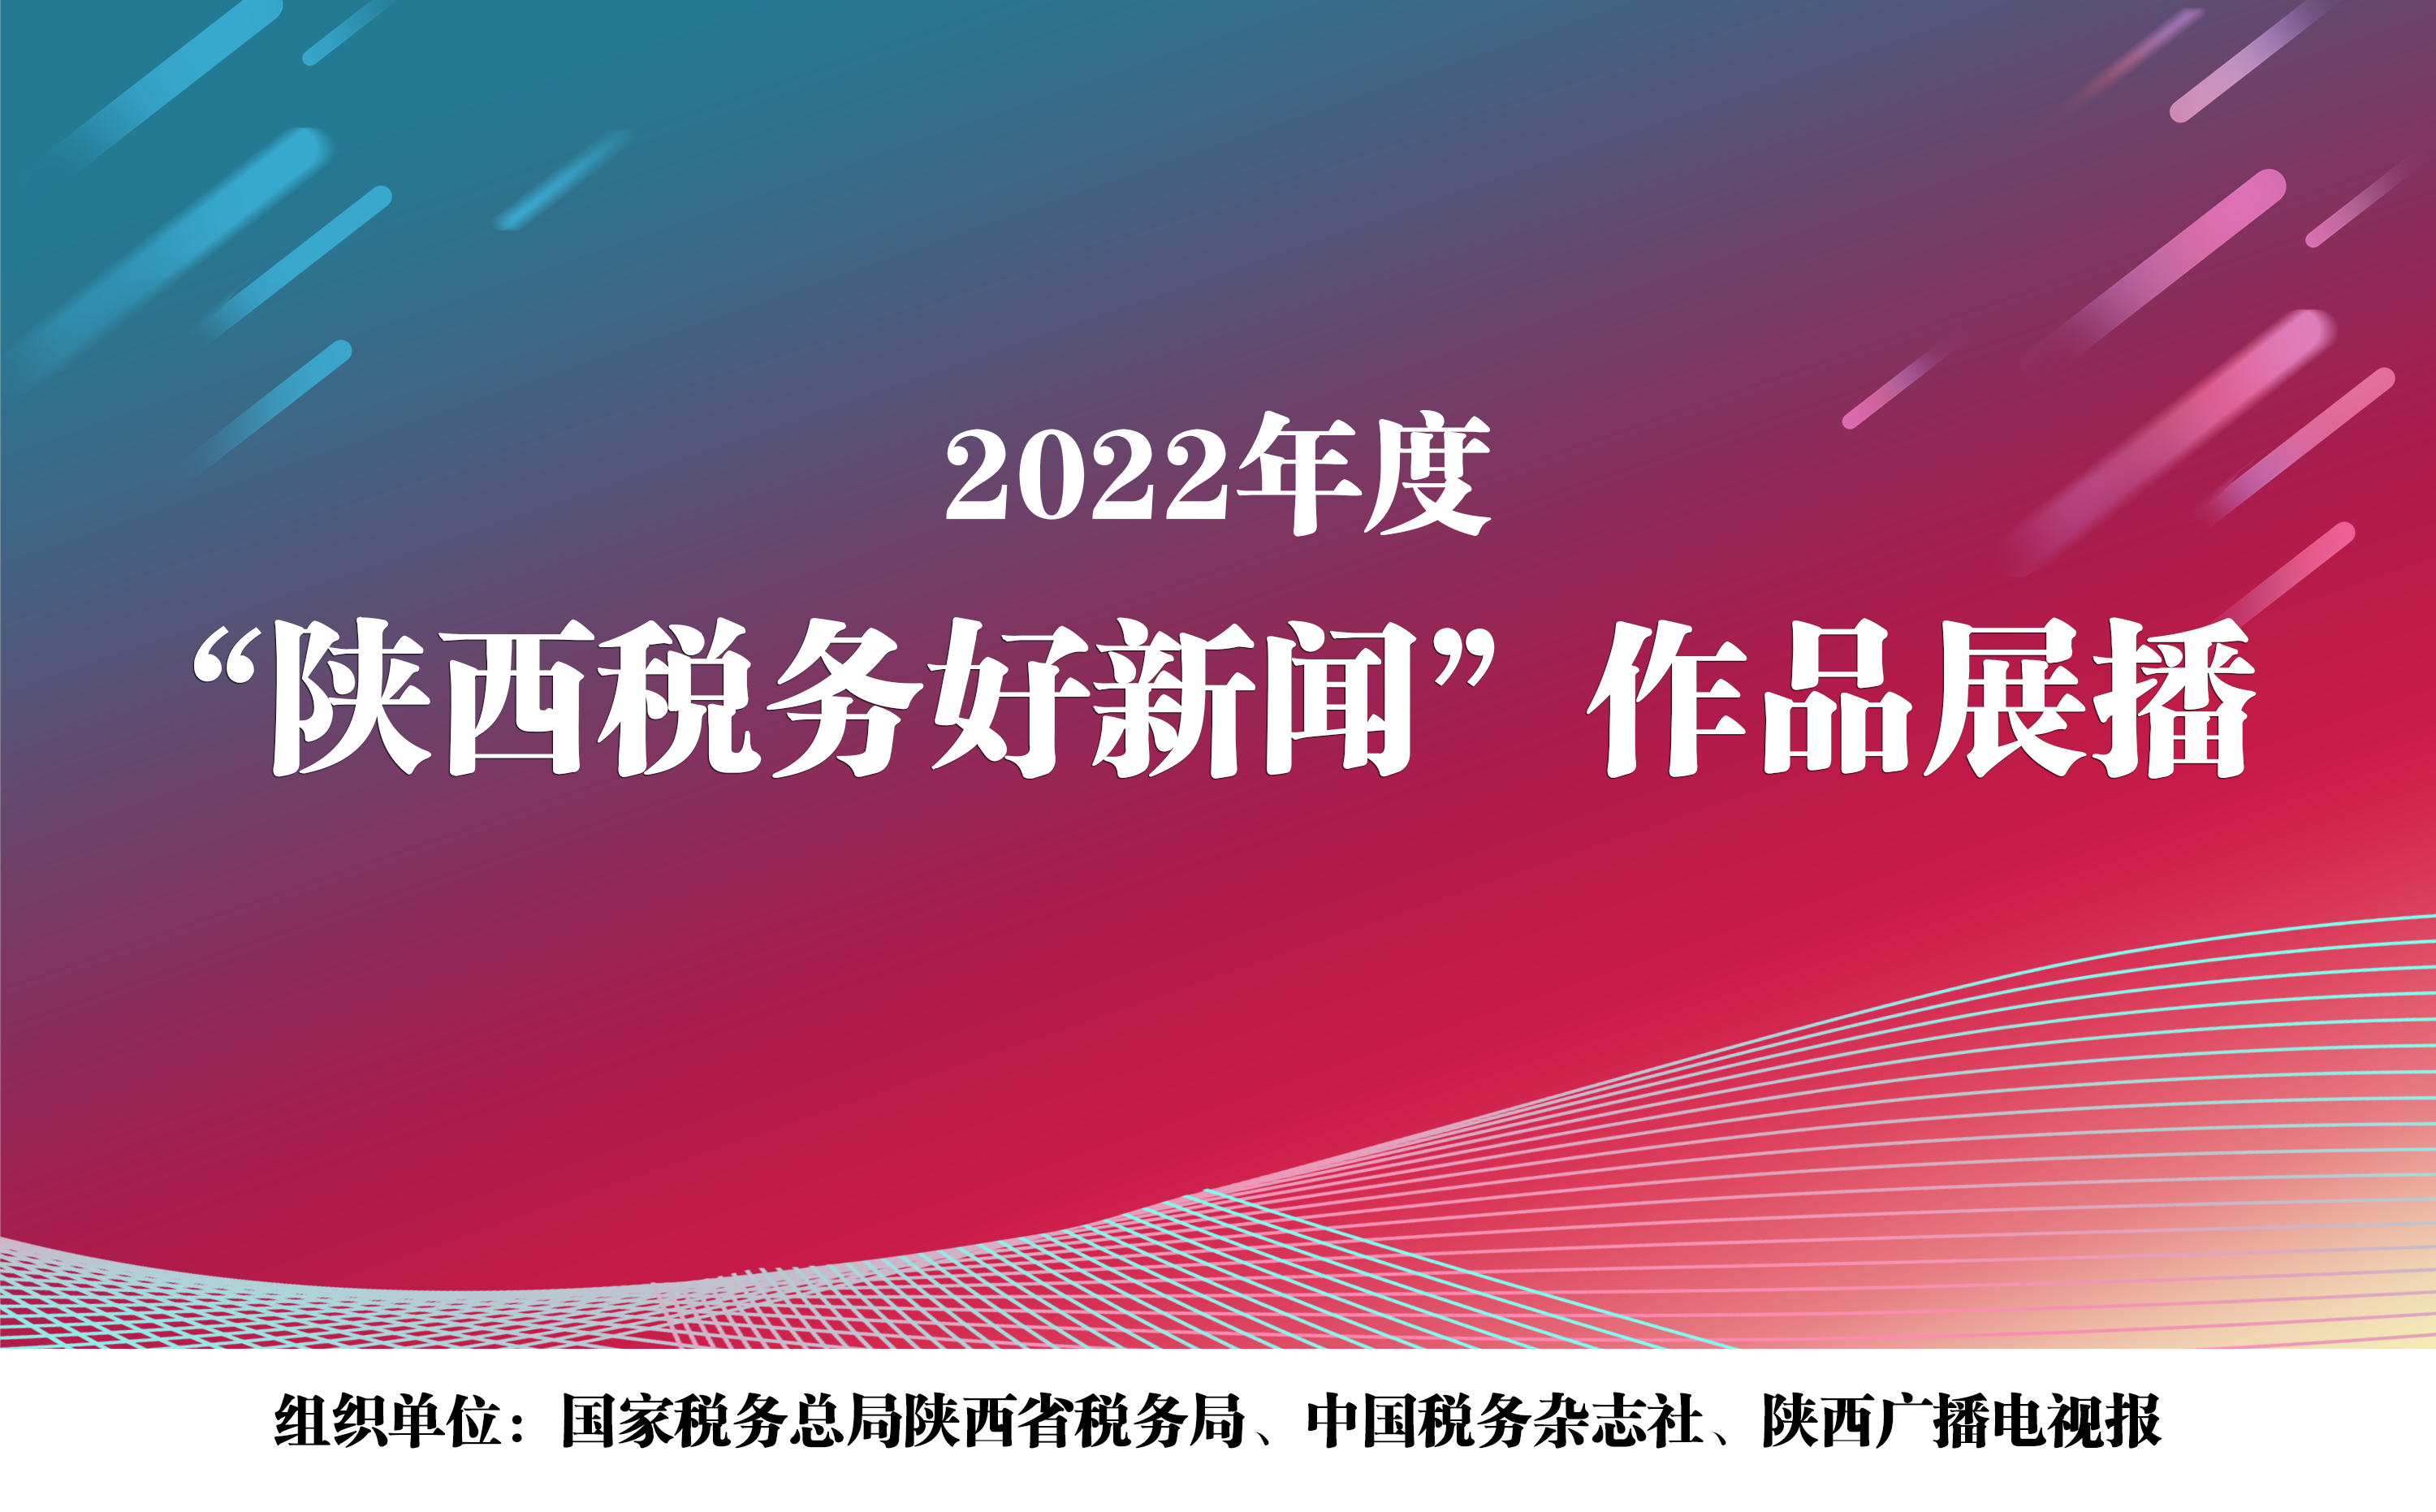 2022年度“陕西税务好新闻”作品展播